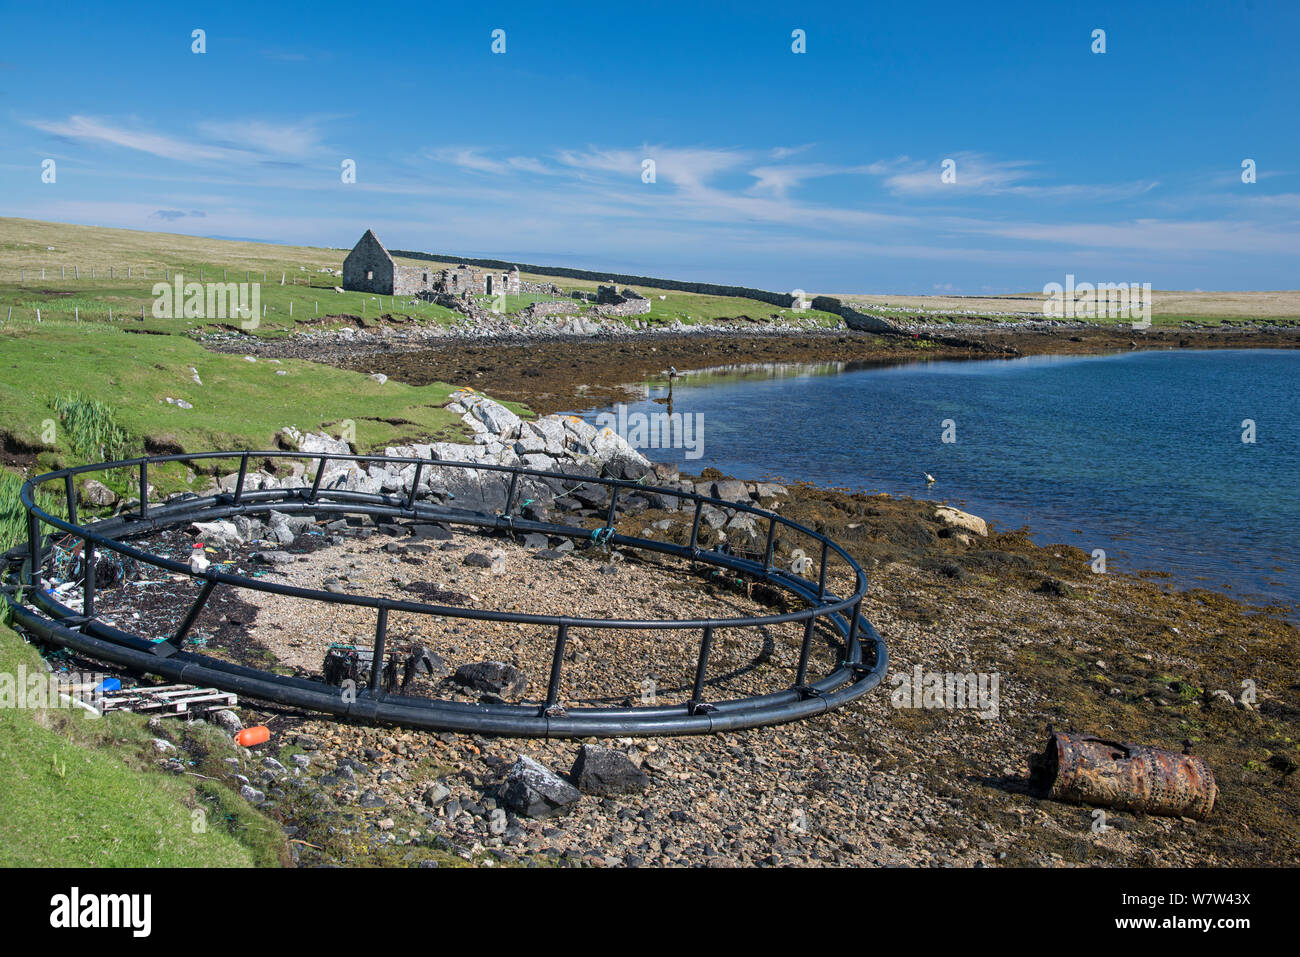 Boîtier d'une ferme salmonicole rejetés rejetés sur la plage à distance. Burravoe, Shetland, Scotland, UK, mai. Banque D'Images